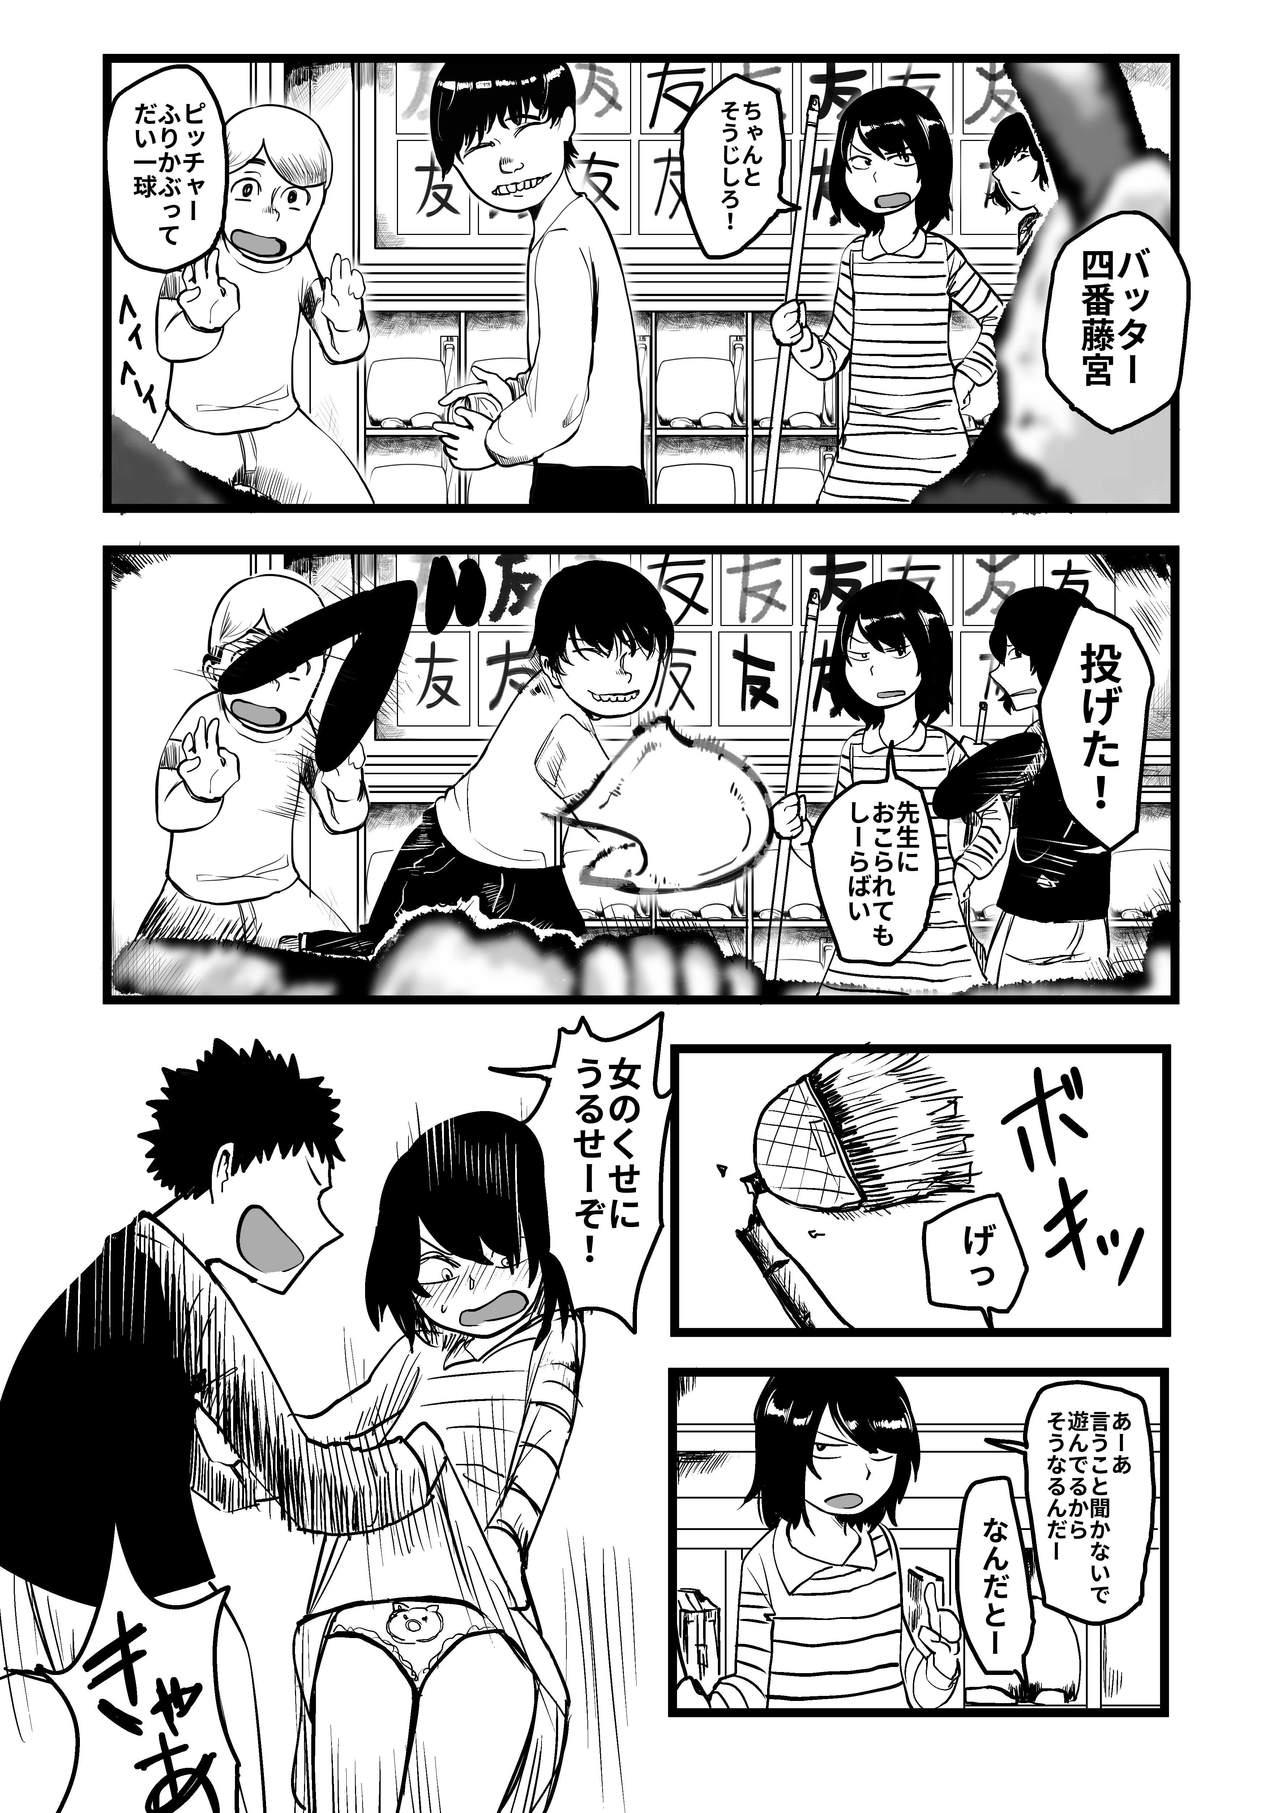 Ball Busting Ore ga Watashi ni Naru made - Original Publico - Page 1